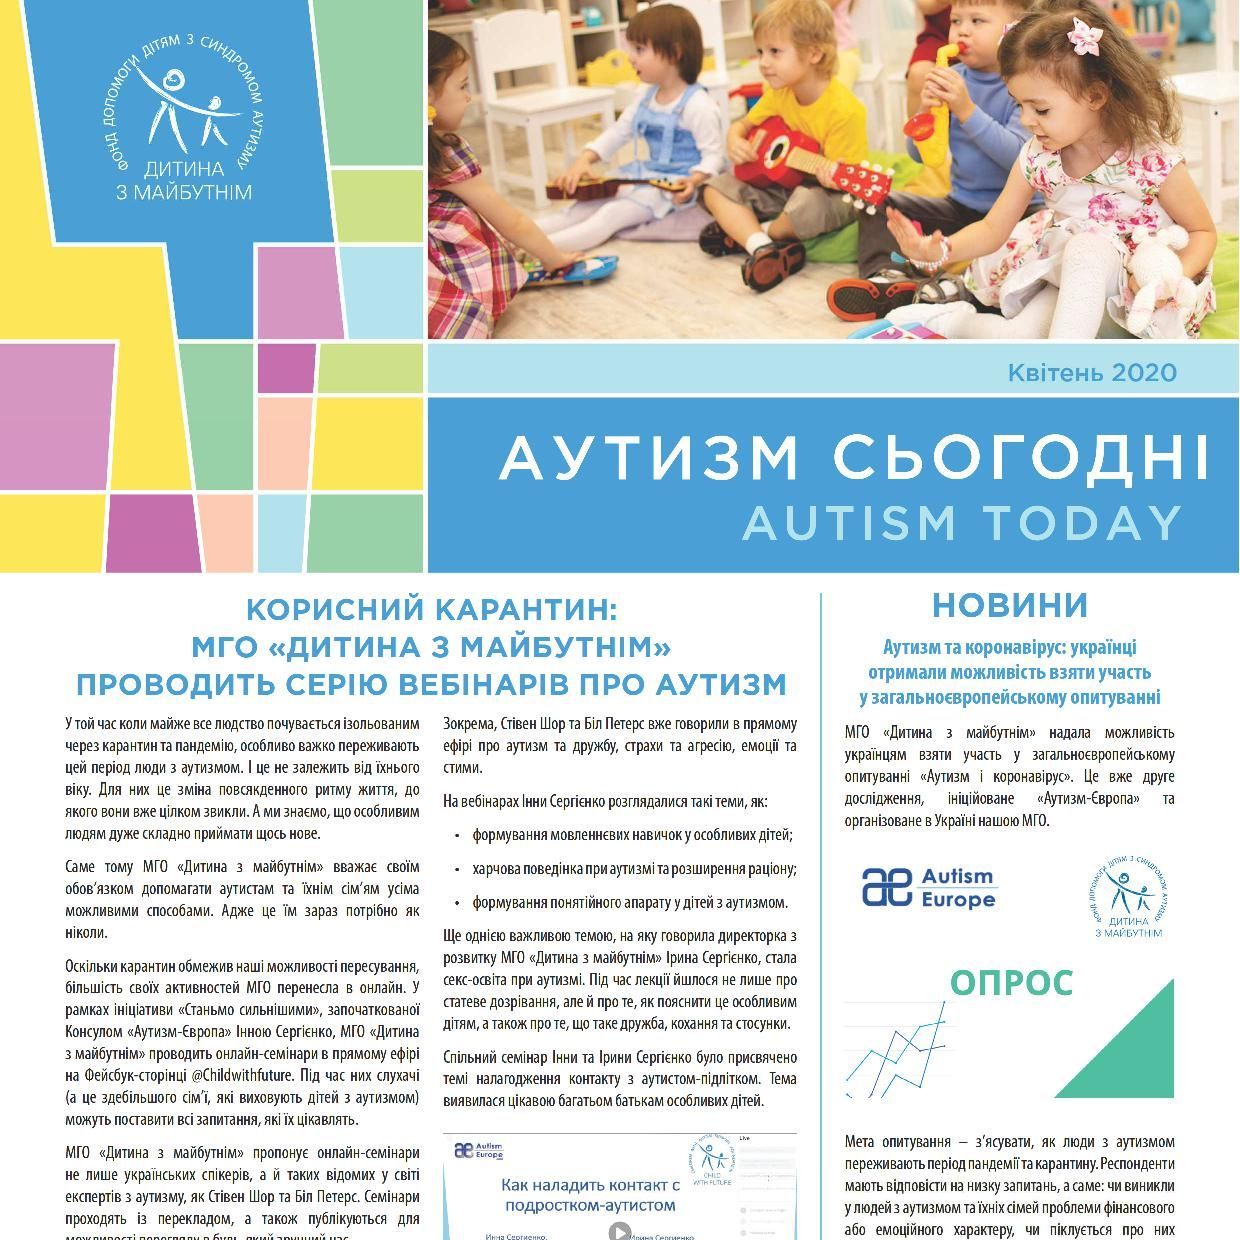 Корисні вебінари, унікальний звіт та інтерв’ю Марини Порошенко у новому випуску «Аутизм Сьогодні»